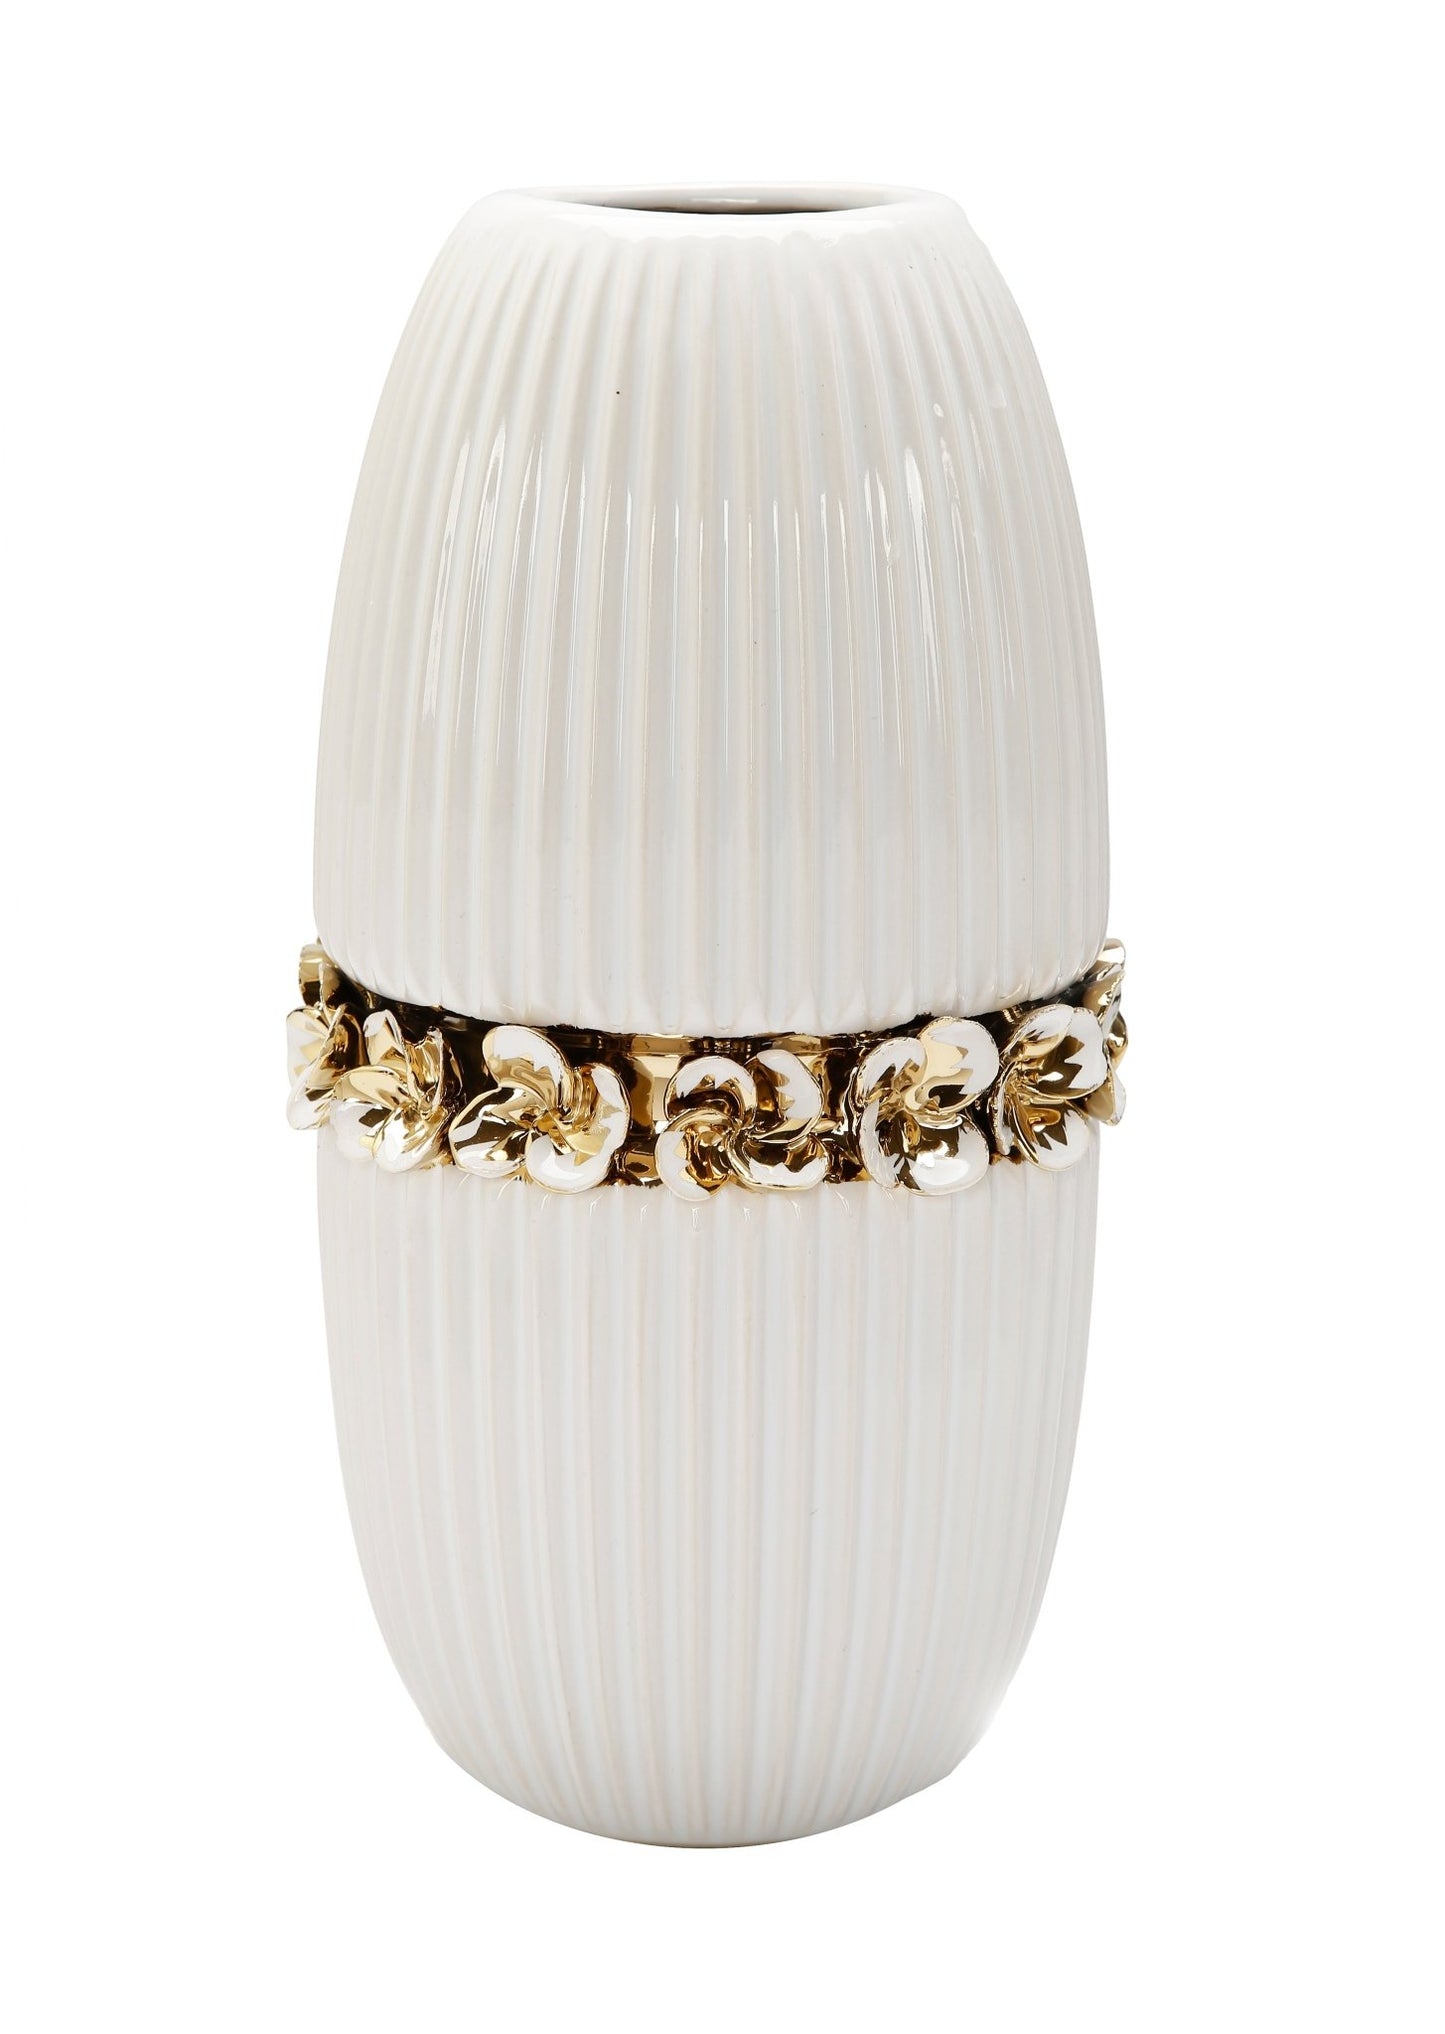 12" White Ceramic Vase Gold Design - HOUSE OF SHE